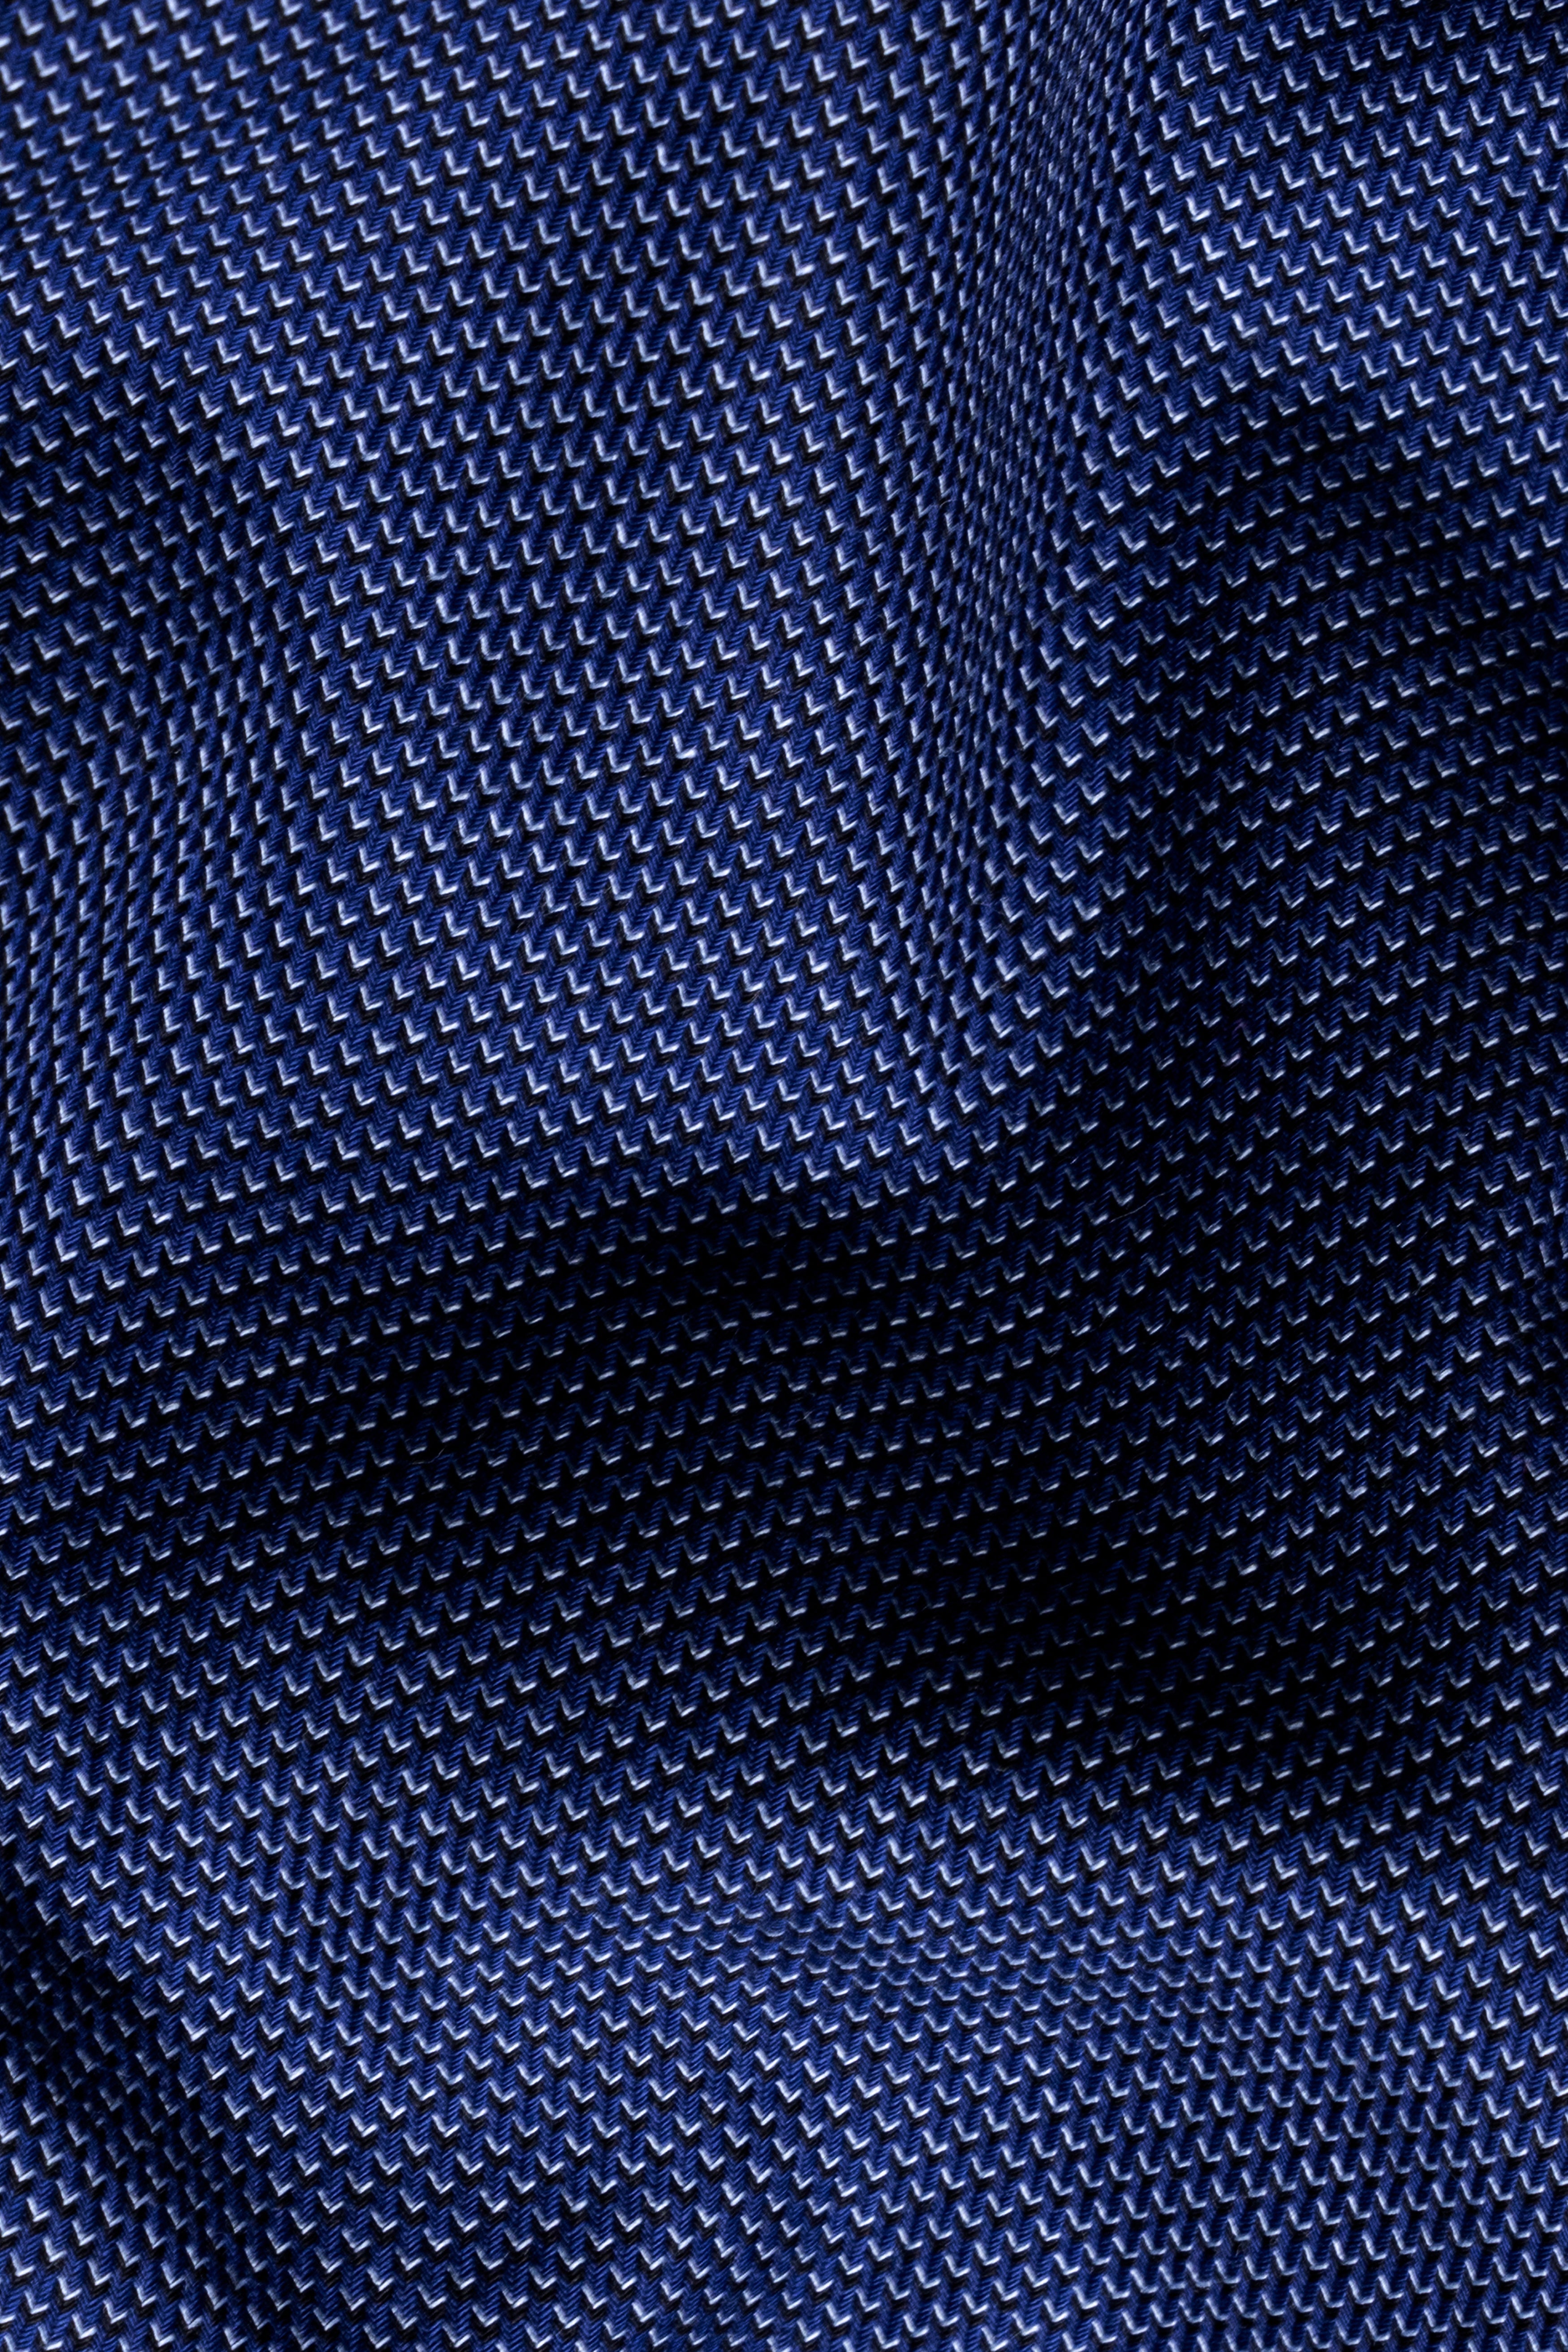 Cove Blue Dobby Textured Giza Cotton Shorts SR370-28, SR370-30, SR370-32, SR370-34, SR370-36, SR370-38, SR370-40, SR370-42, SR370-44